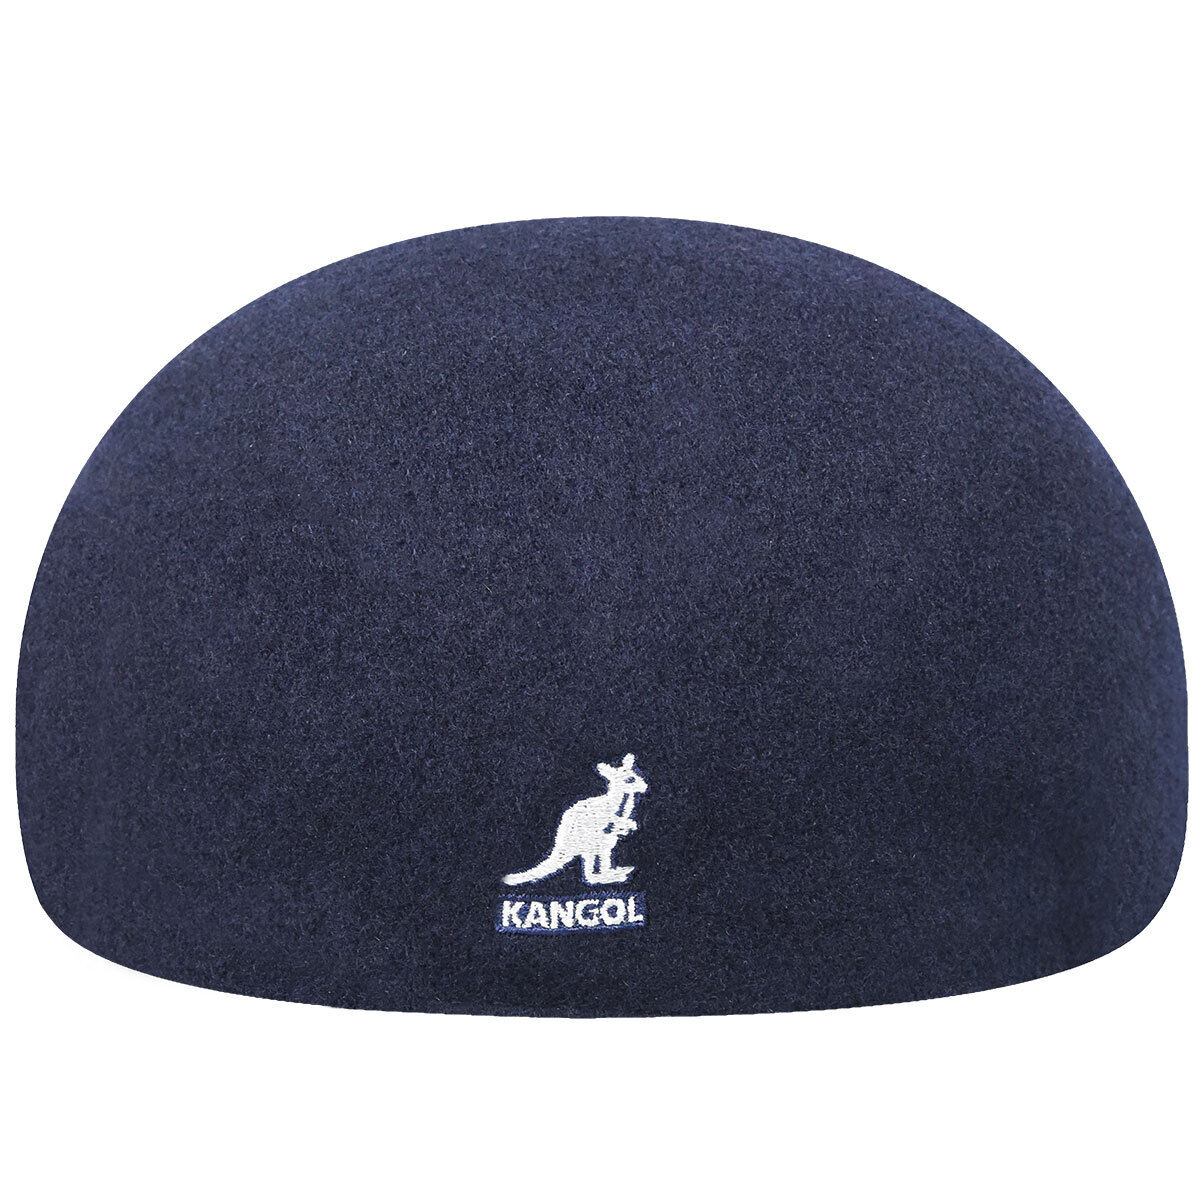 K-I (Kangol 507 seamless wool cheese cutter hat dark blue) 32496200